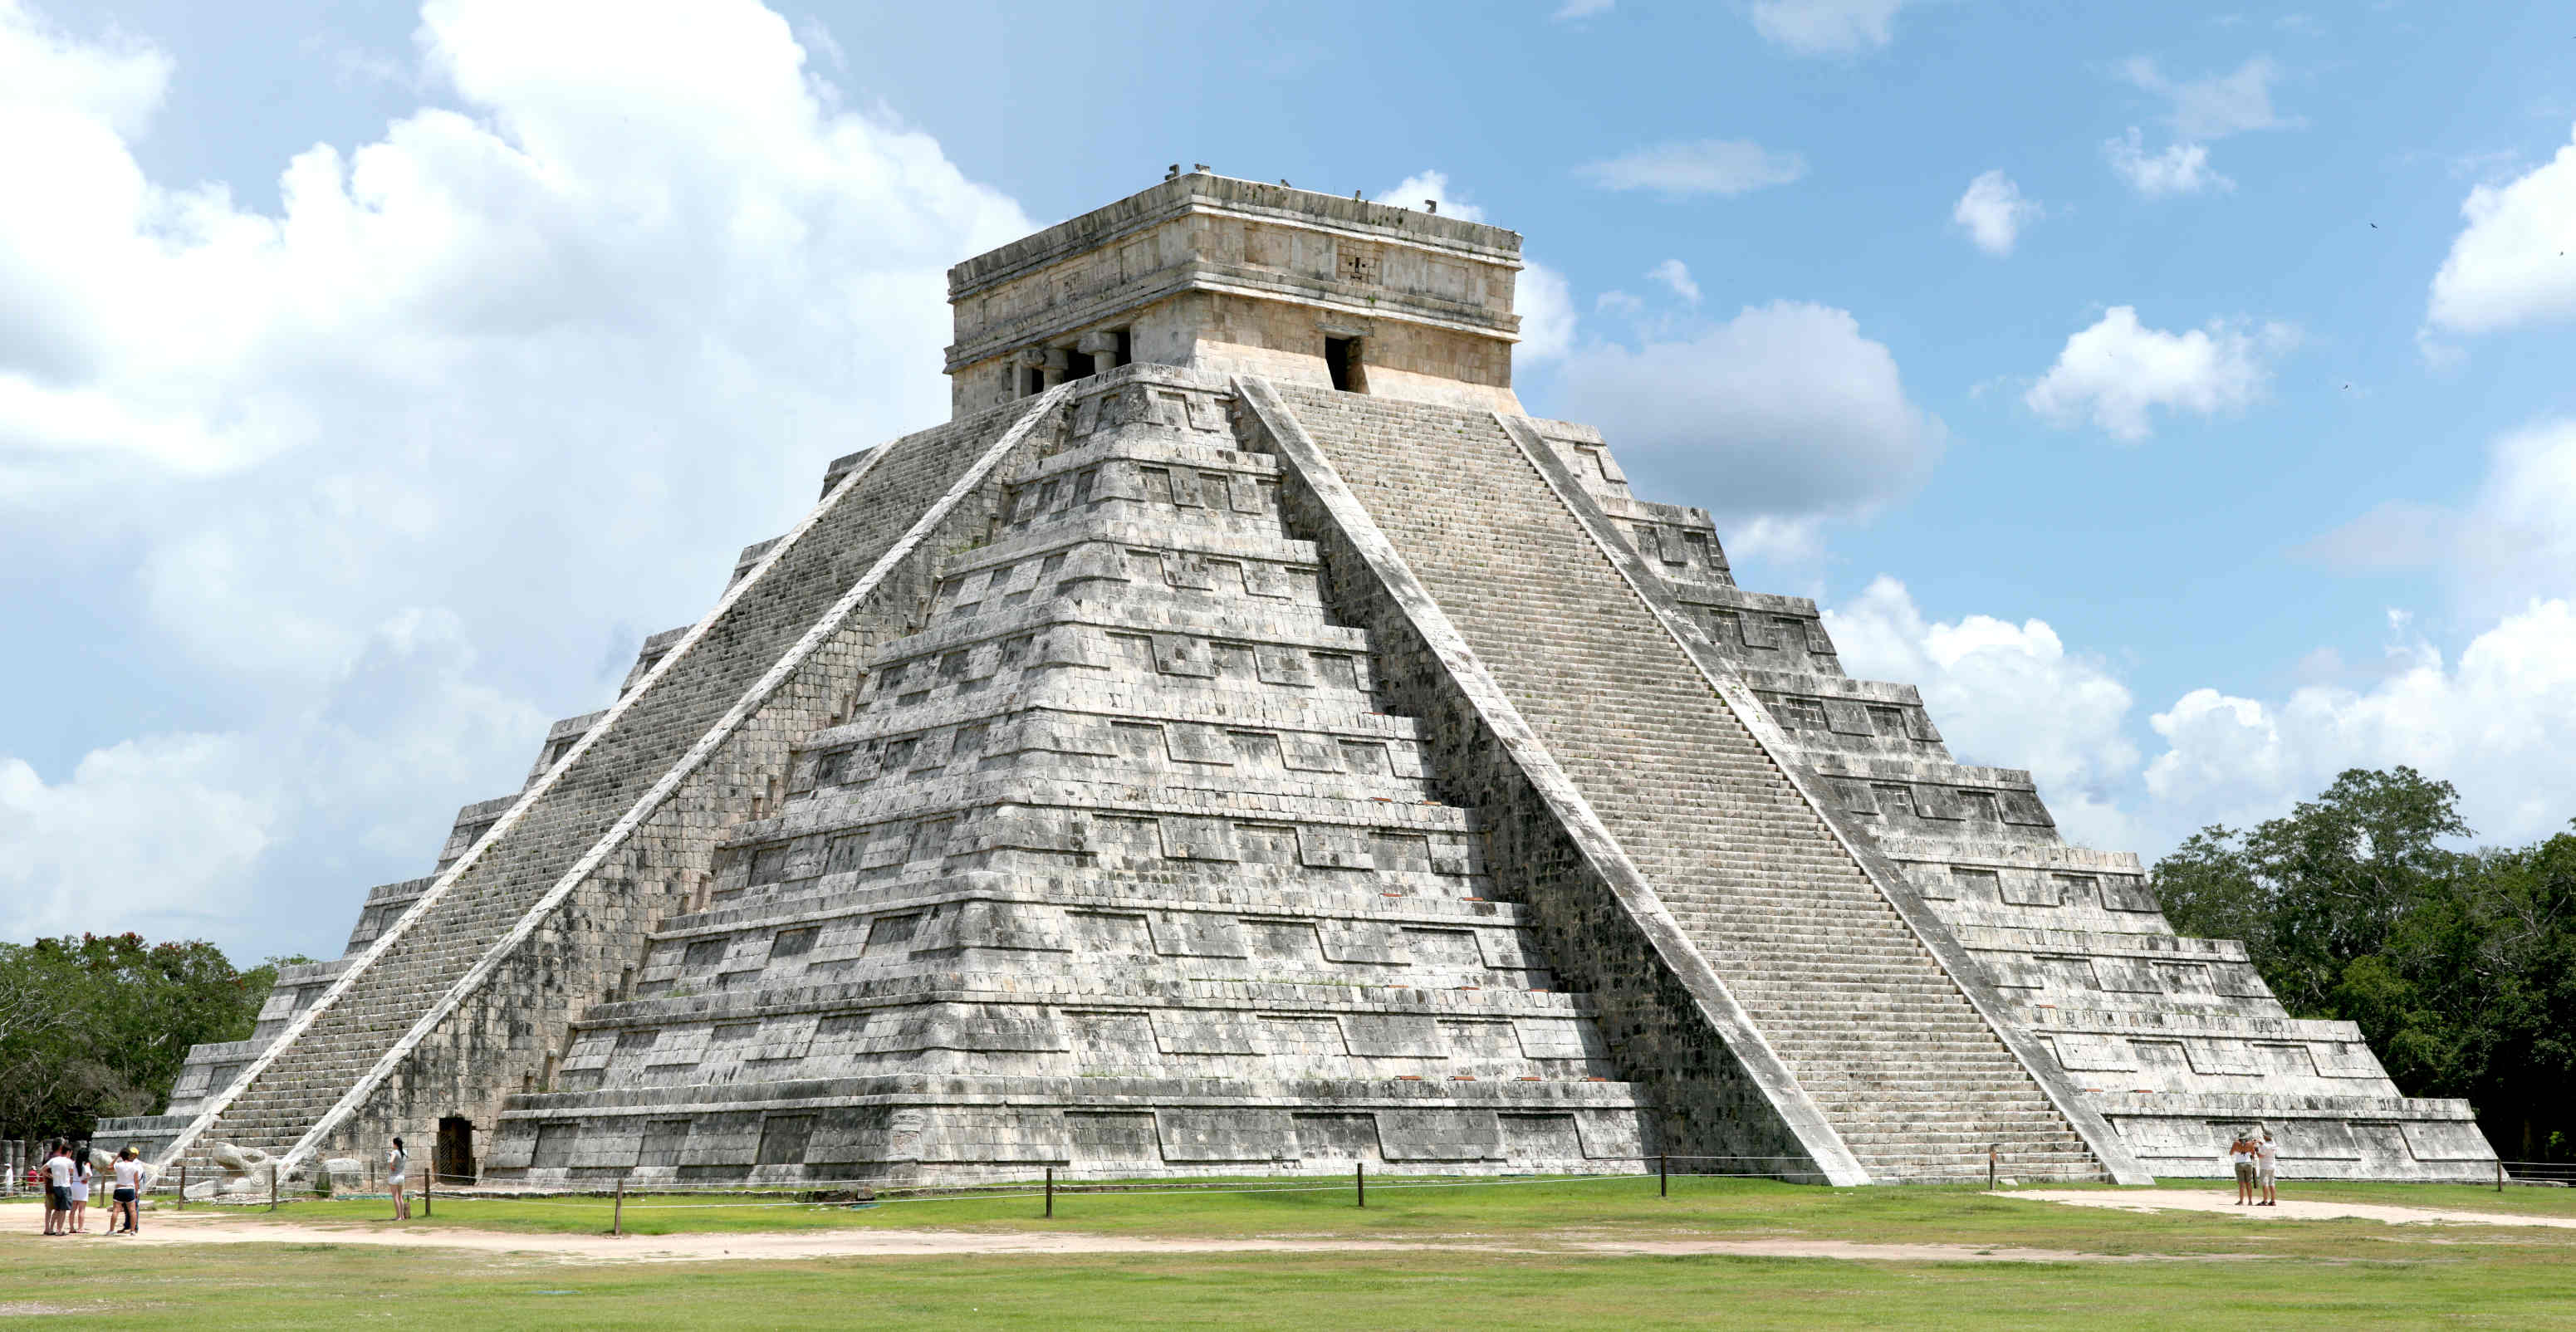 Mayan pyramid at Chichen Itza, Yucatan Peninsular, Mexico